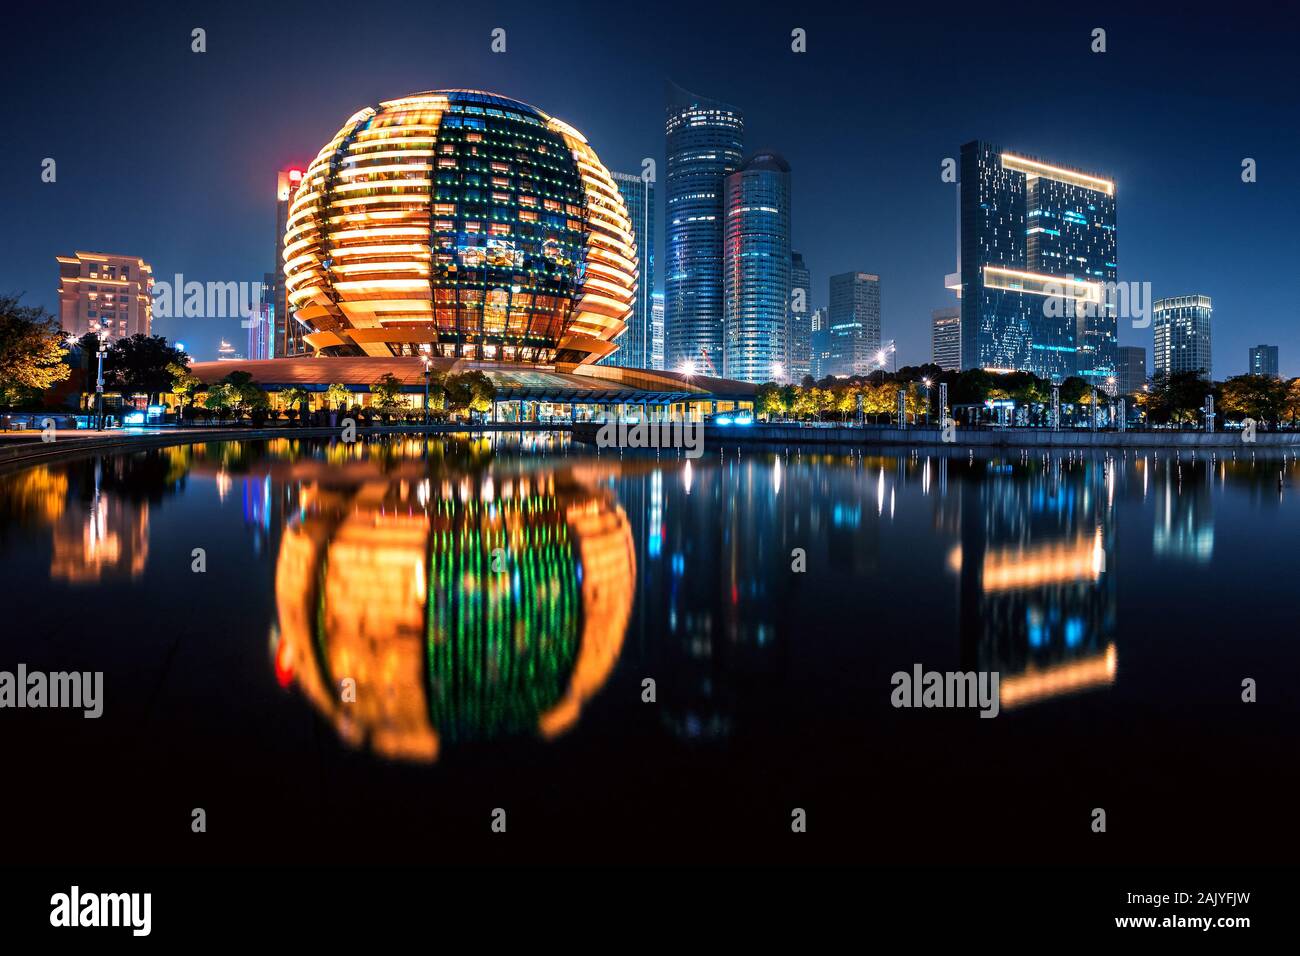 Night view of Qianjiang New Town with reflection, Hangzhou, Zhejiang, China Stock Photo